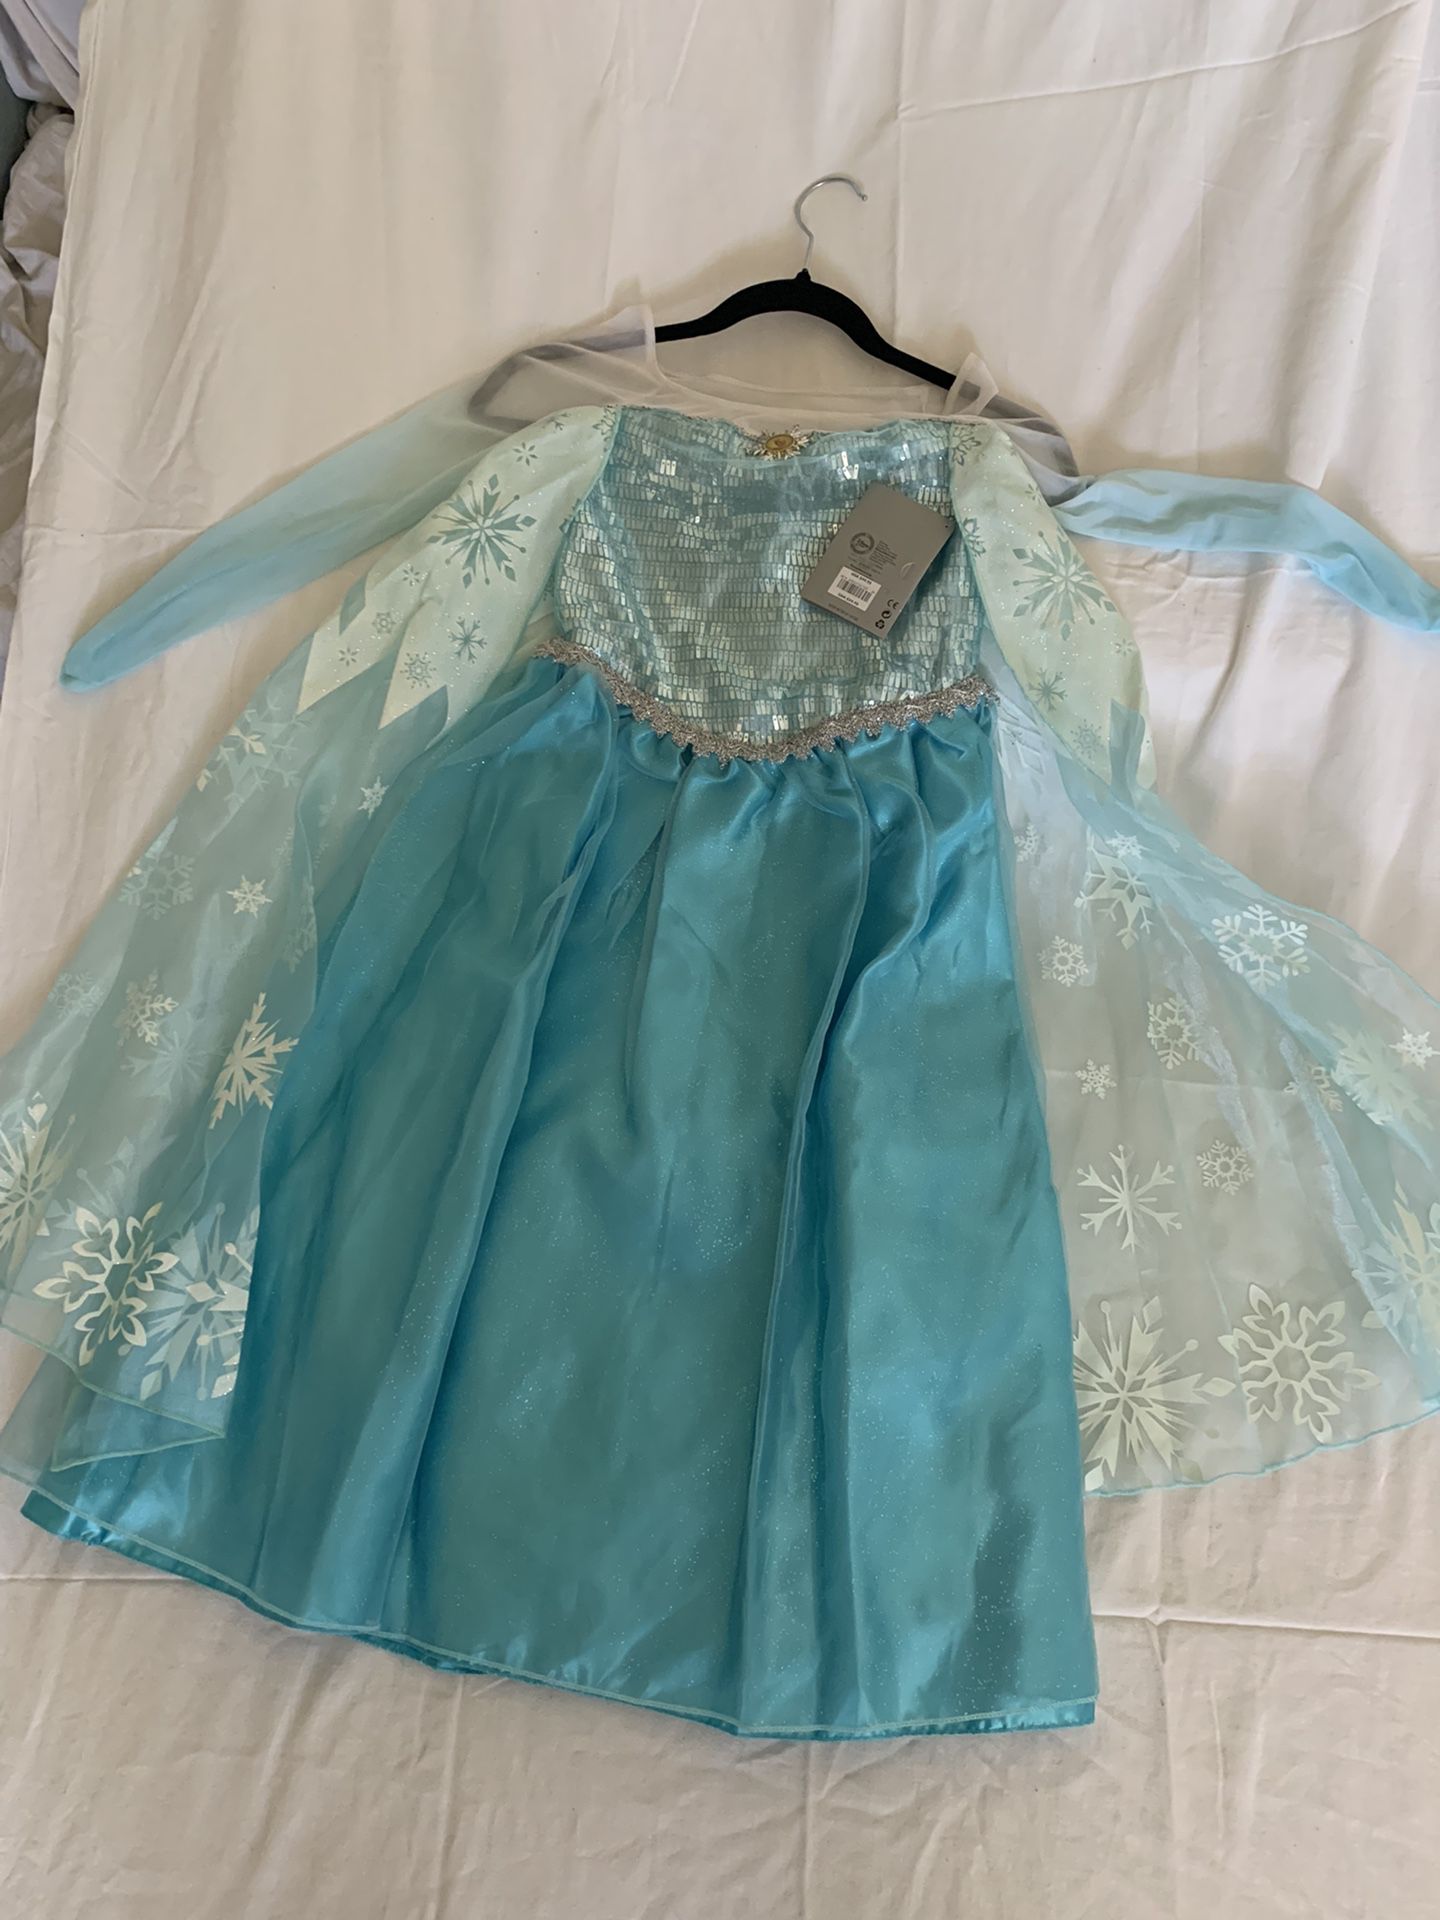 Disney Store Elsa Dress Size 7/8 NWT